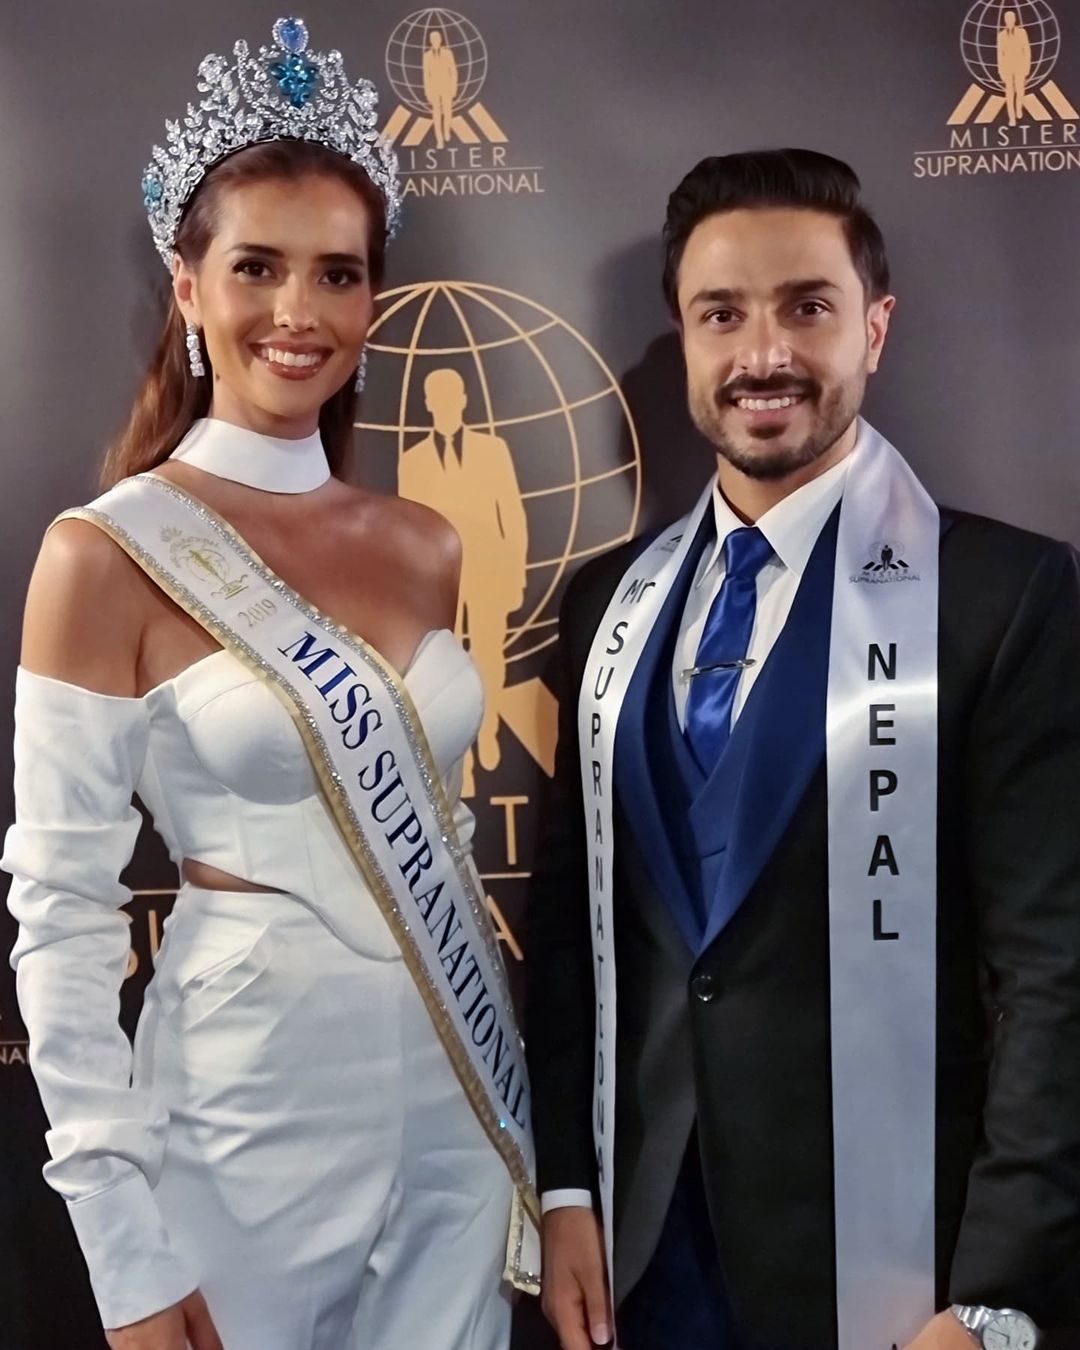 anntonia porsild, miss supranational 2019/top 2 de miss universe 2023. - Página 5 Downl215